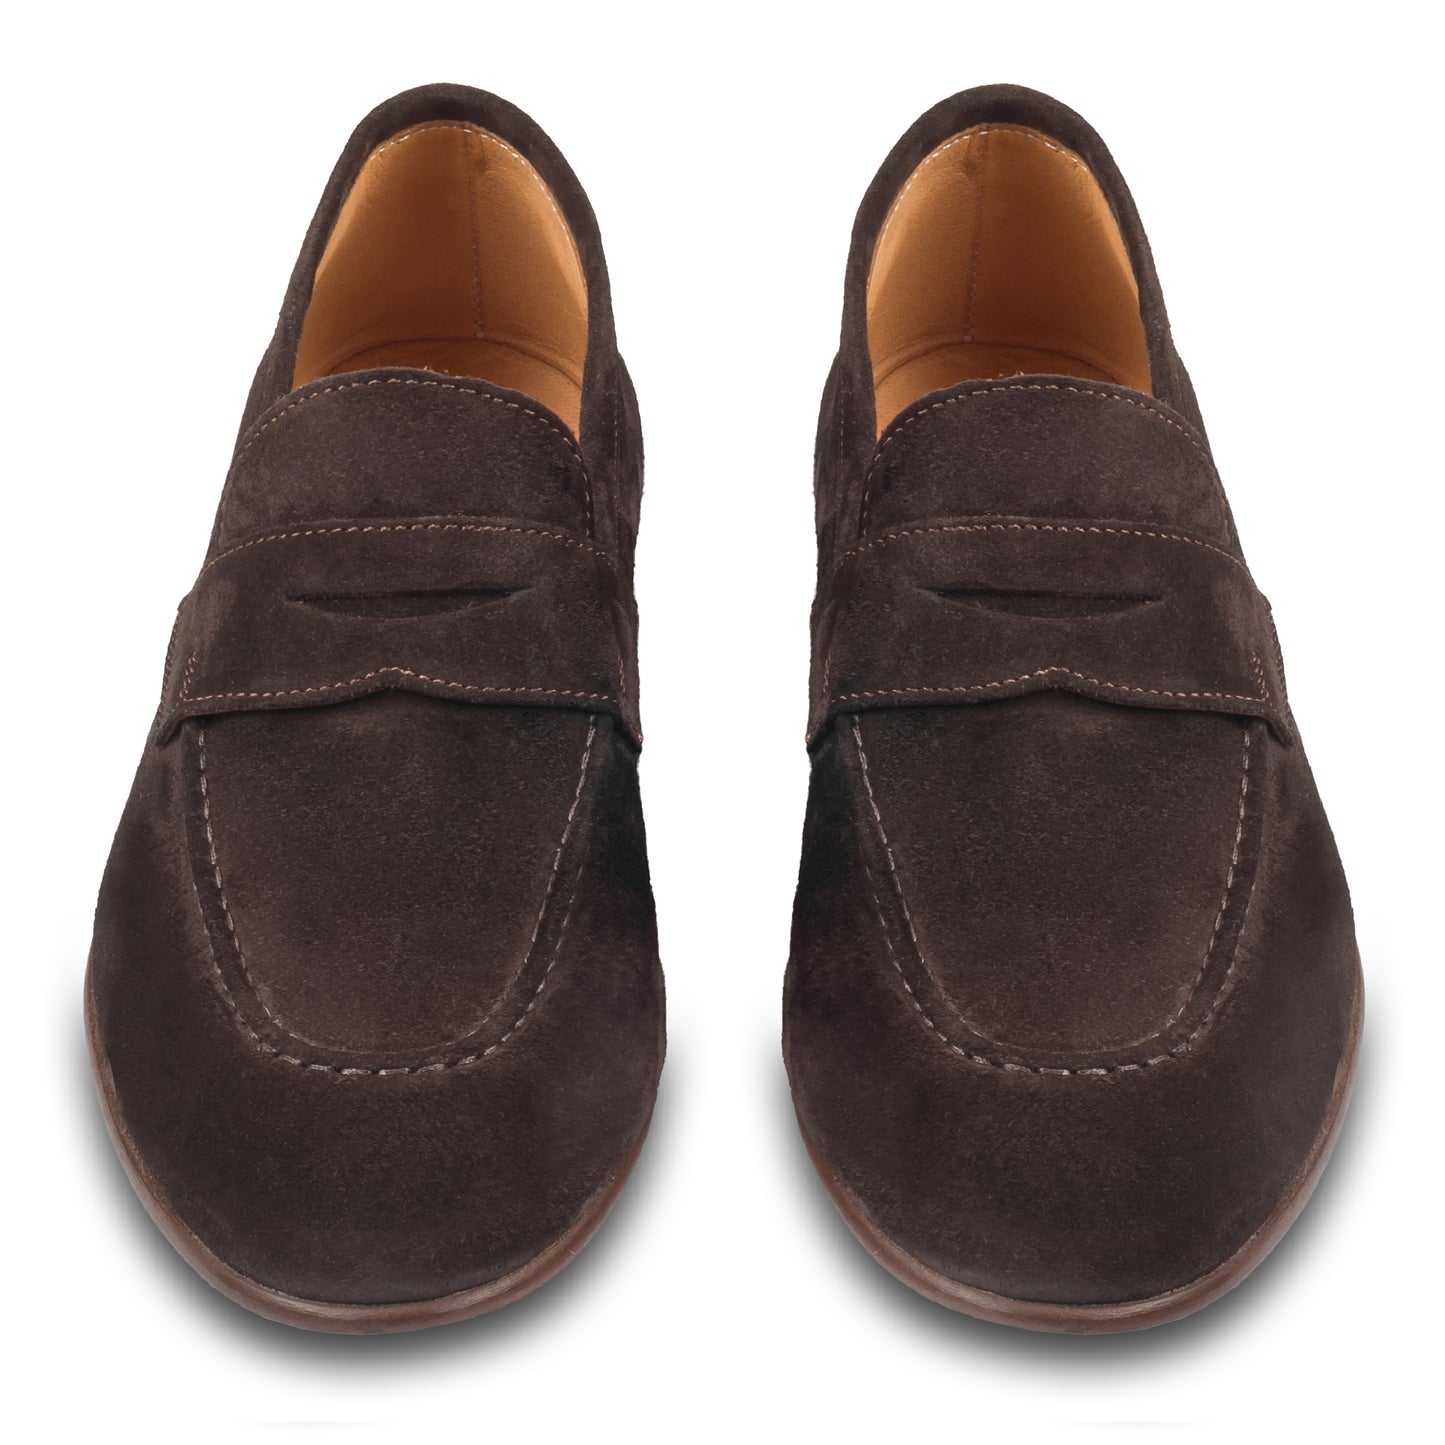 Brecos Italienische Herren-Loafer aus Veloursleder in dunkelbraun. Mit Leder-/Gummisohle. Durchgenäht und handgefertigt in Italien. Paarweise Ansicht von vorne.  